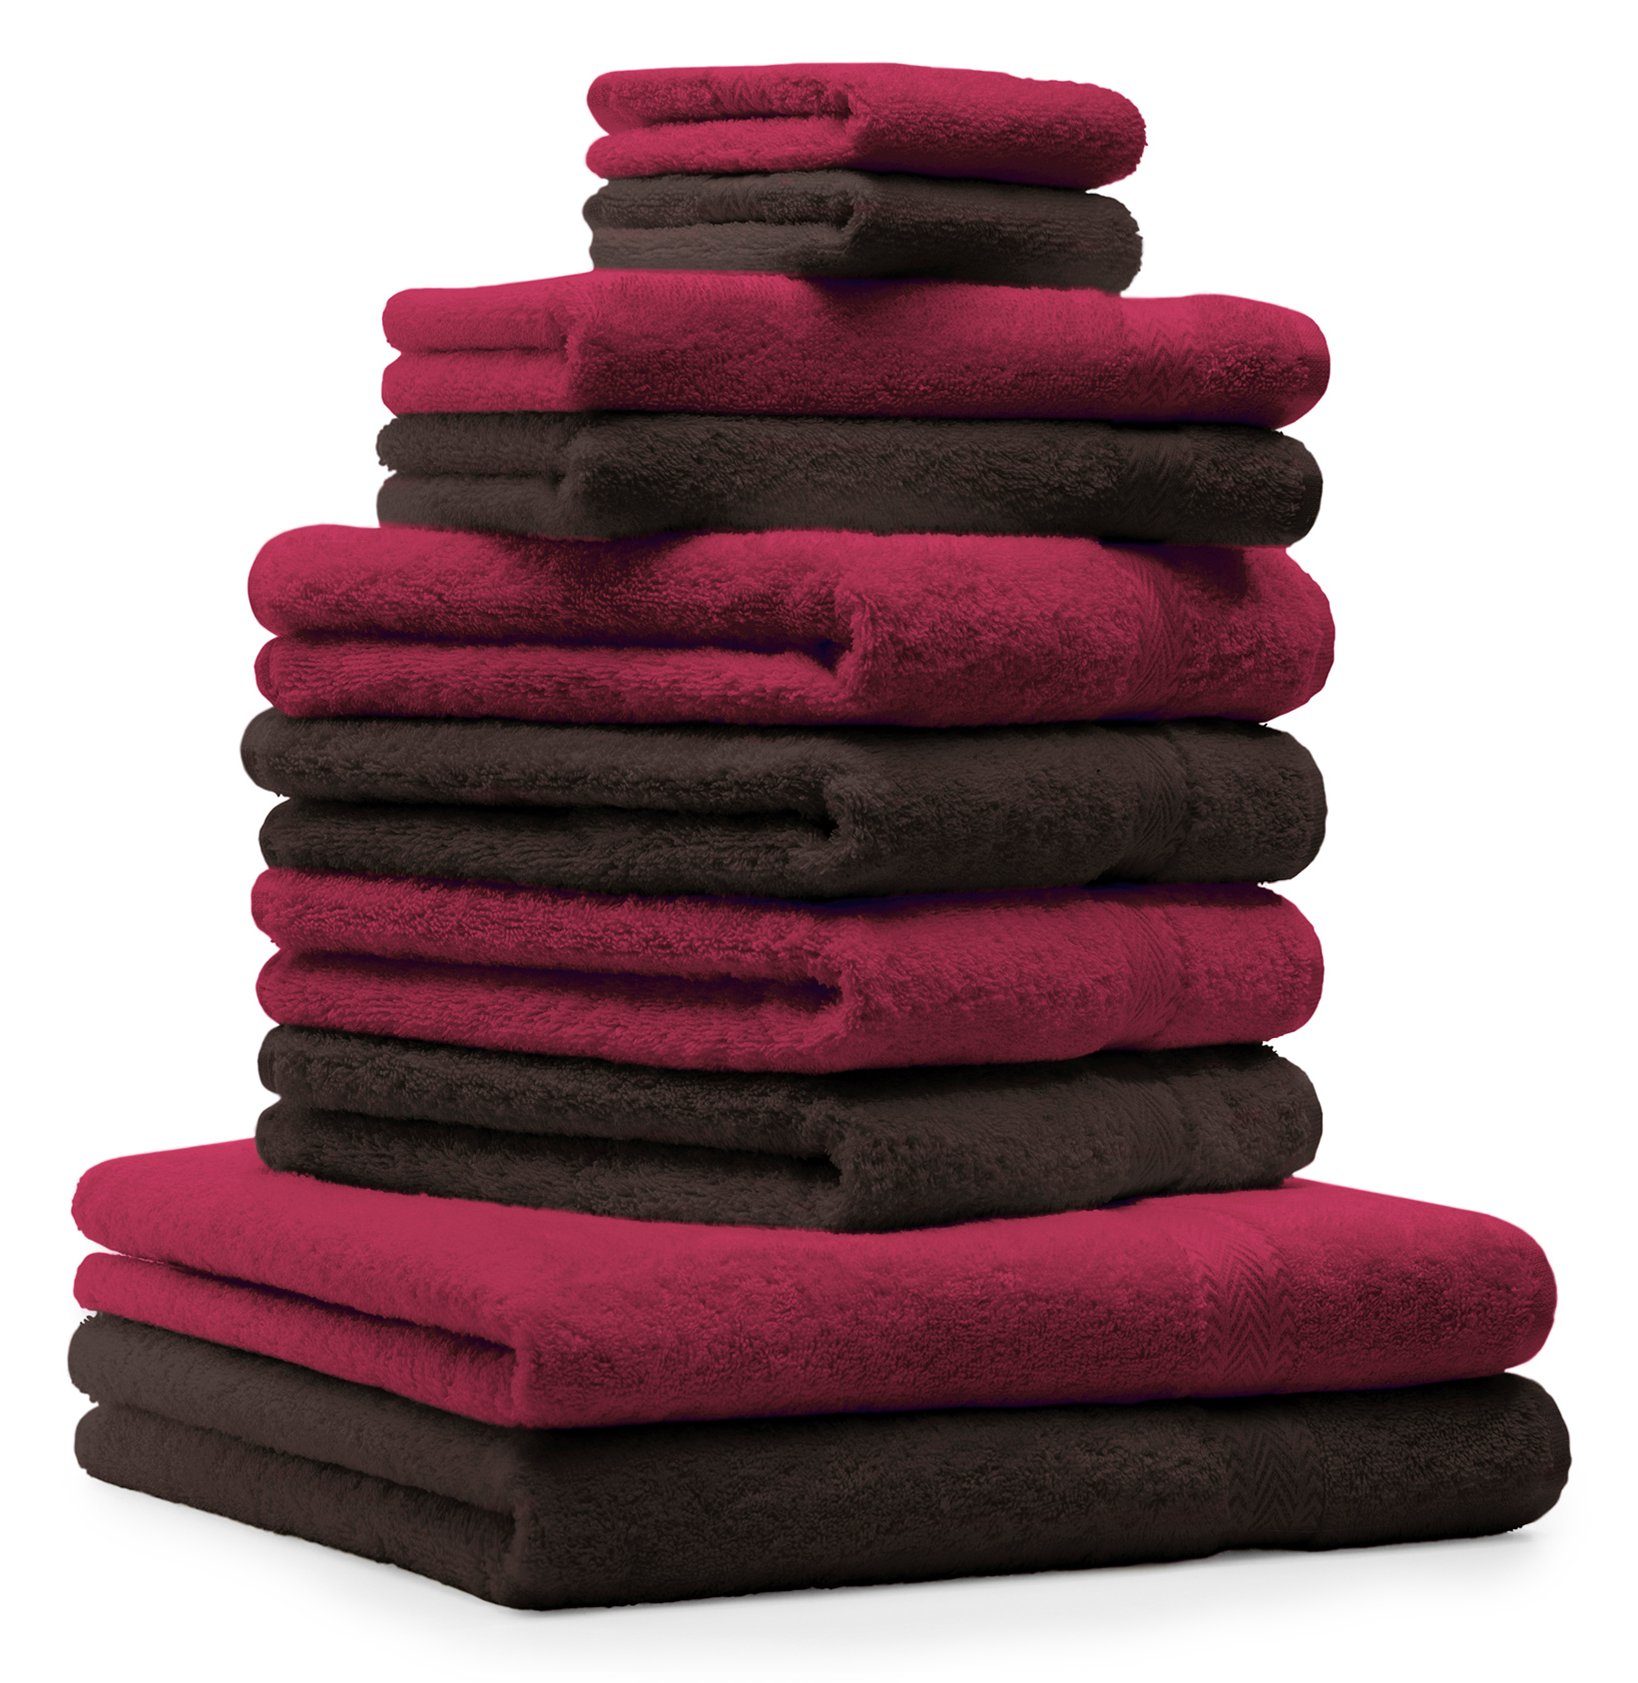 Betz Handtuch Set 10-tlg. Handtuch-Set Premium Farbe Dunkelrot & Dunkelbraun, 100% Baumwolle, (Set, 10-tlg)